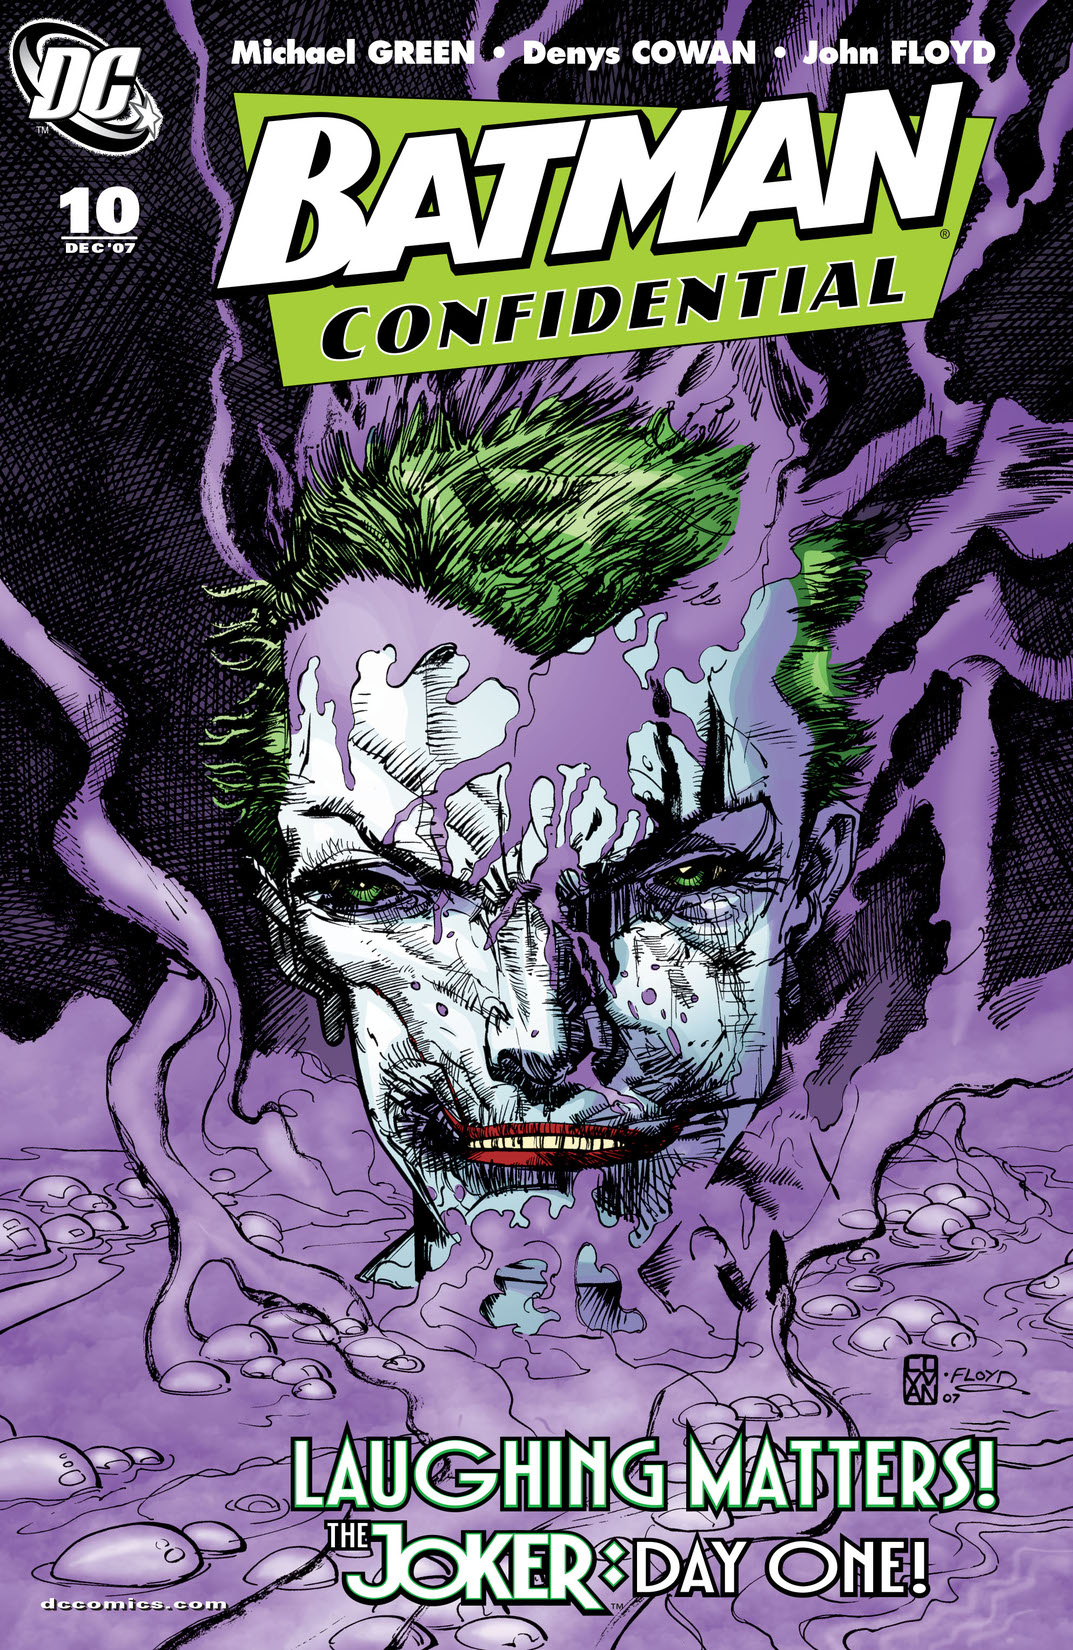 Batman Confidential #10 preview images